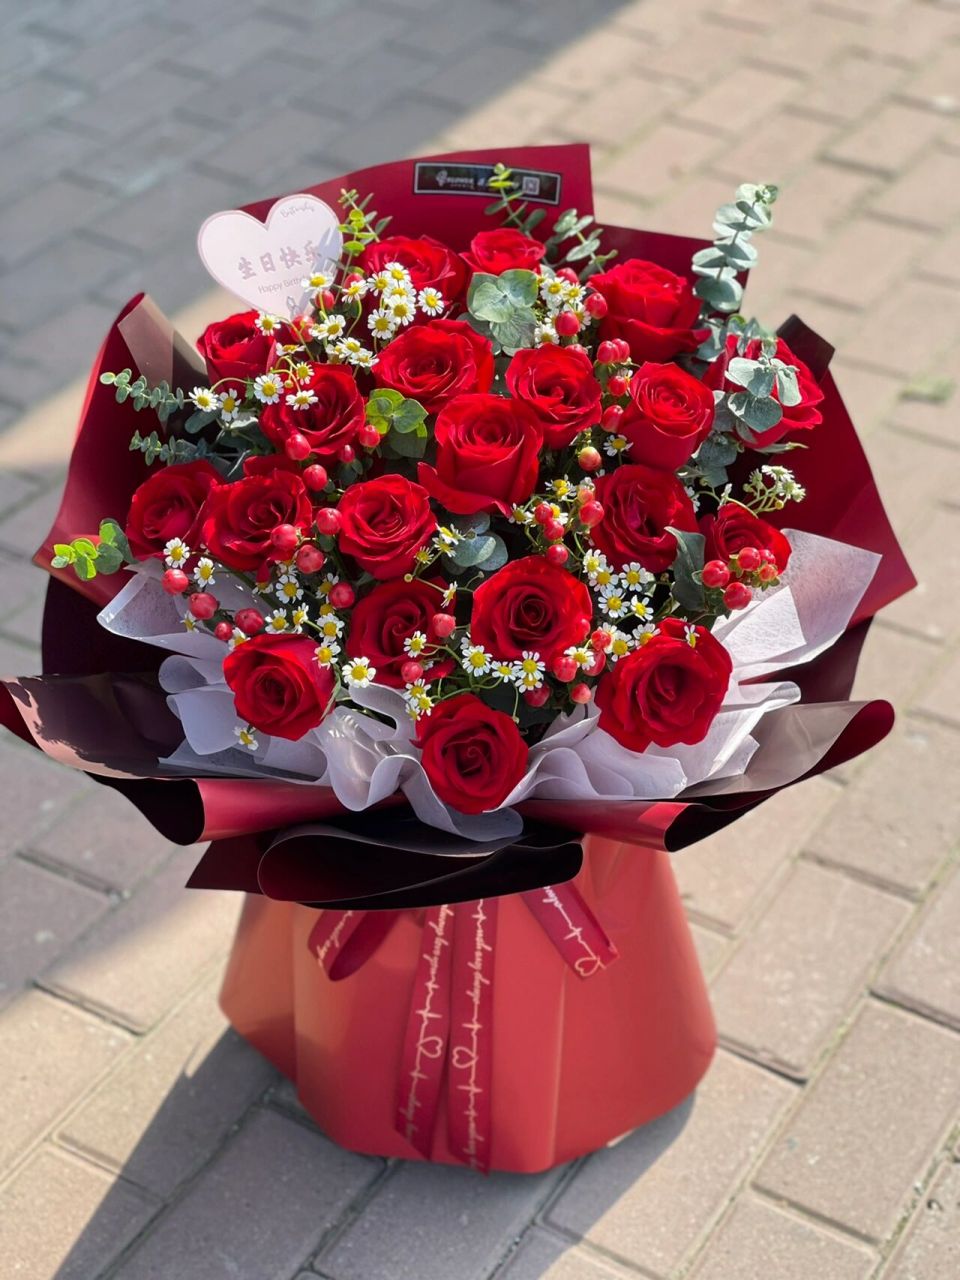 生日花束 夏至已至,生日快乐 百合玫瑰花束,红色系红玫瑰花束,向日葵